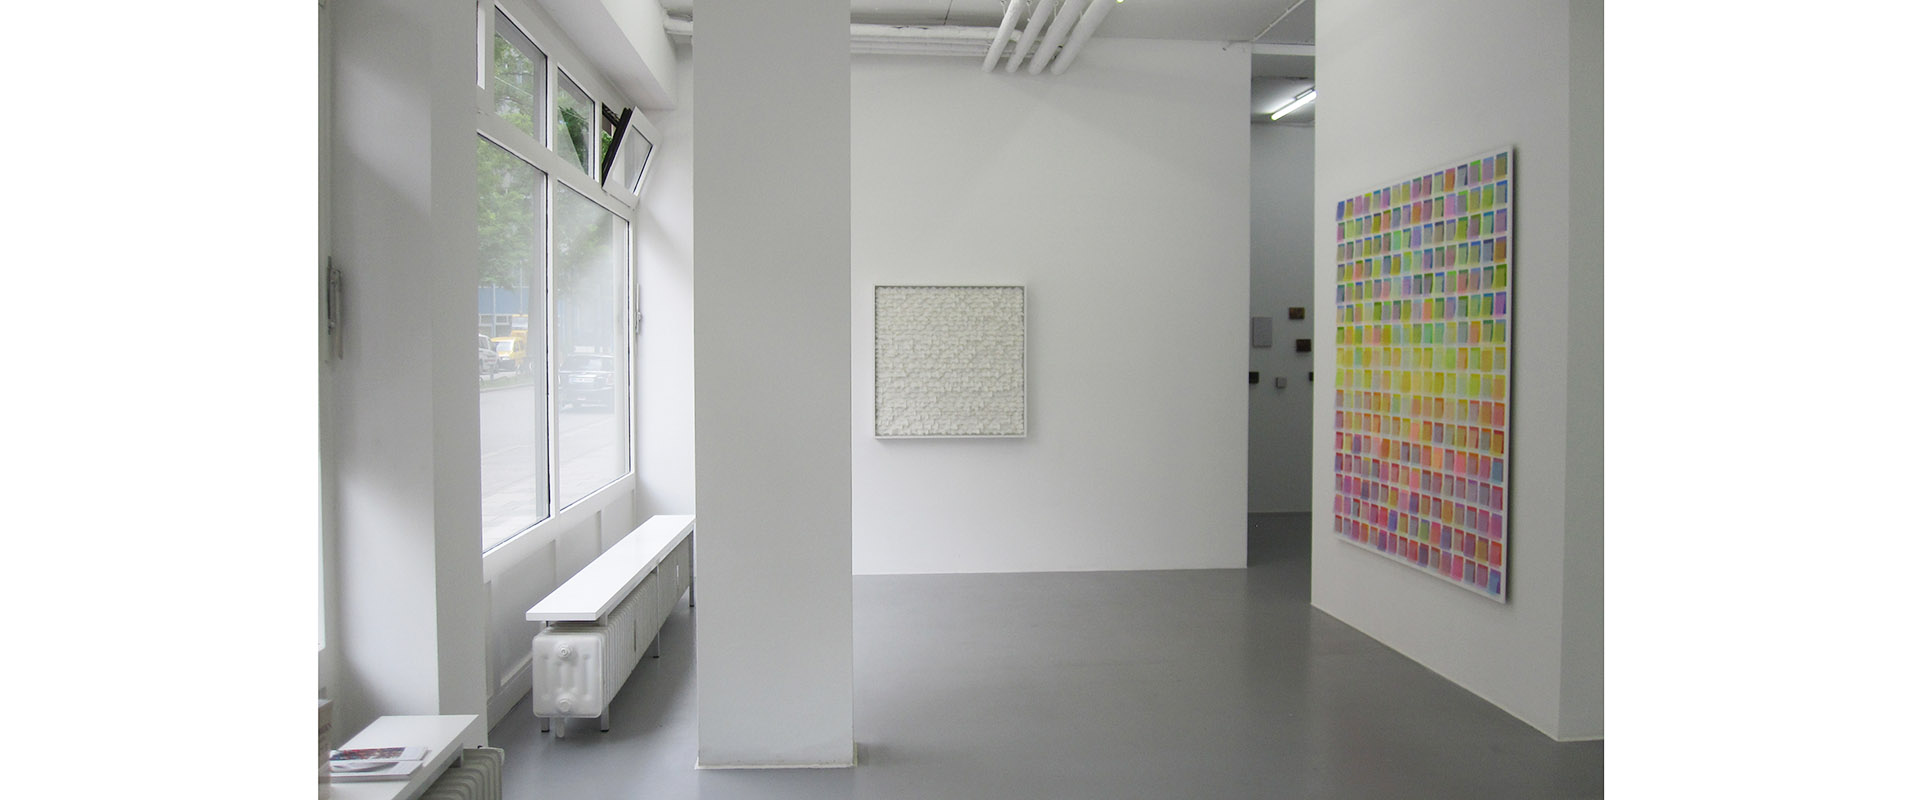 Ausstellungsansicht "Works on & with Paper", Galerie Renate Bender 2015